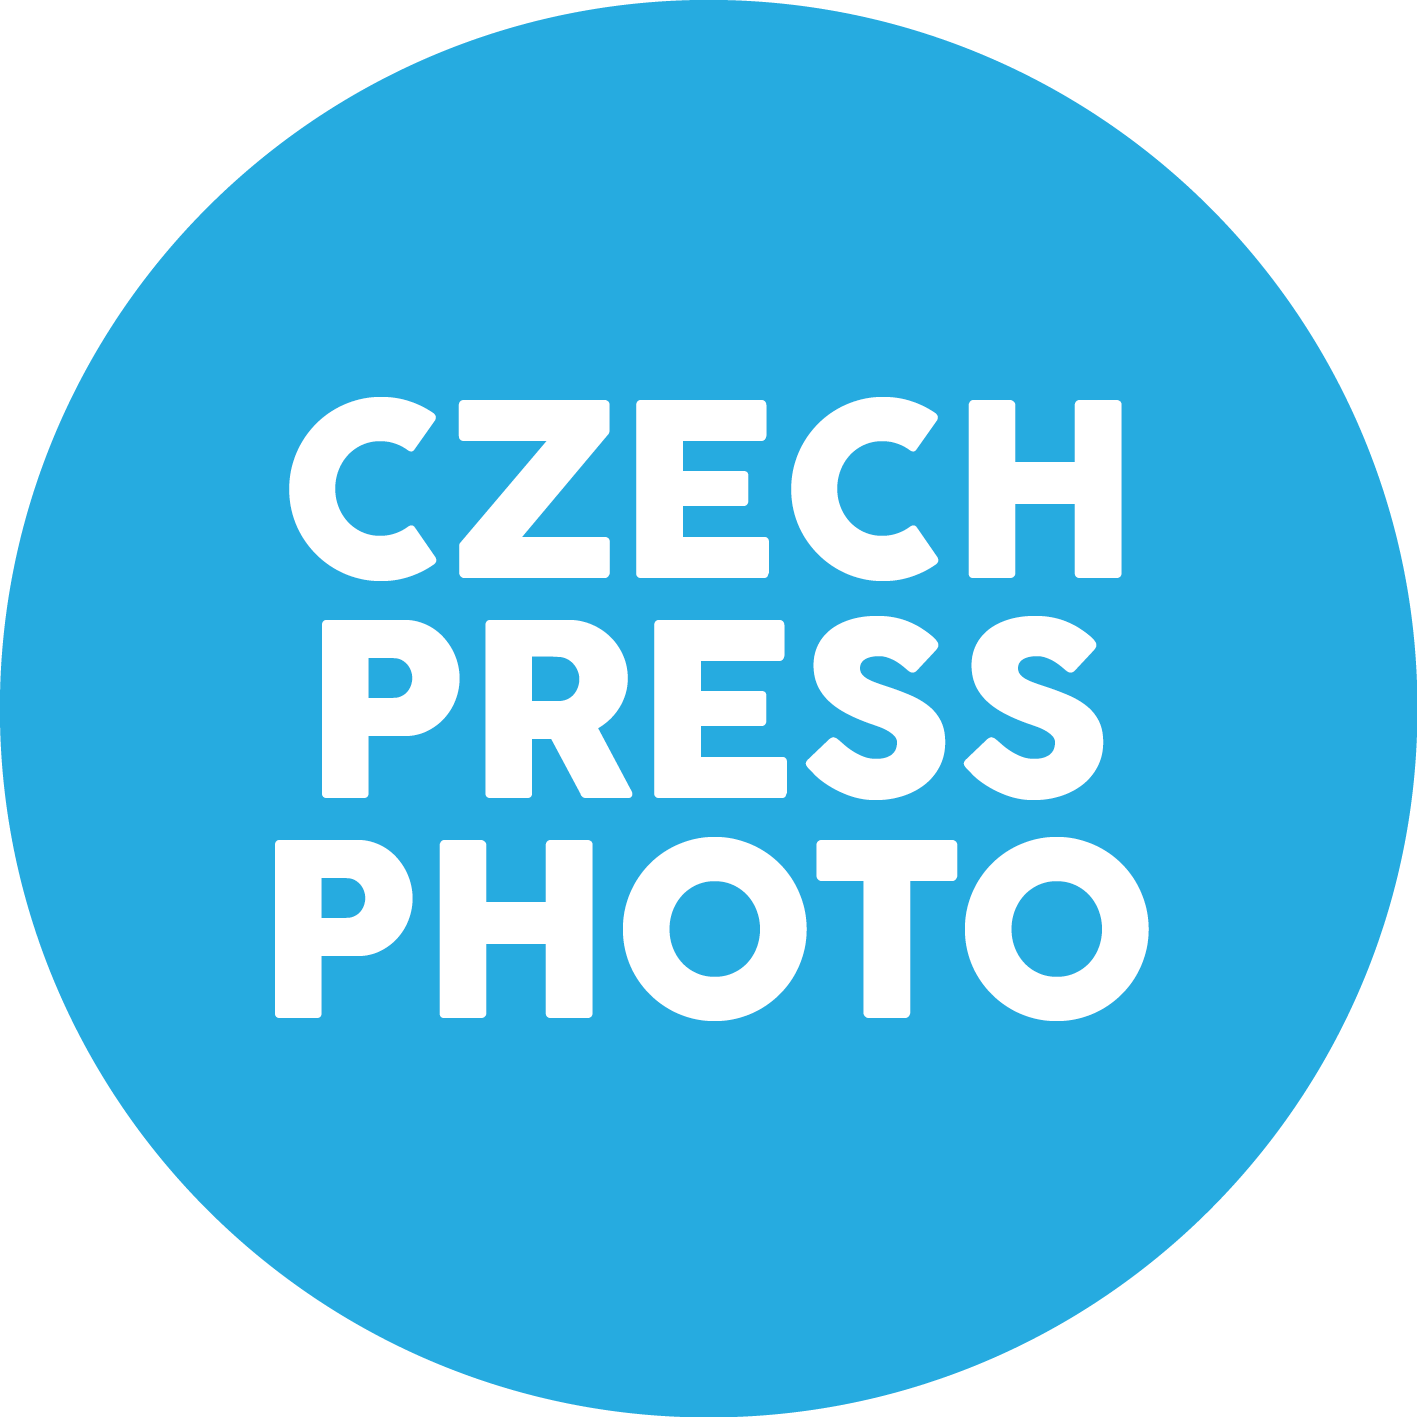 Czech Press Photo